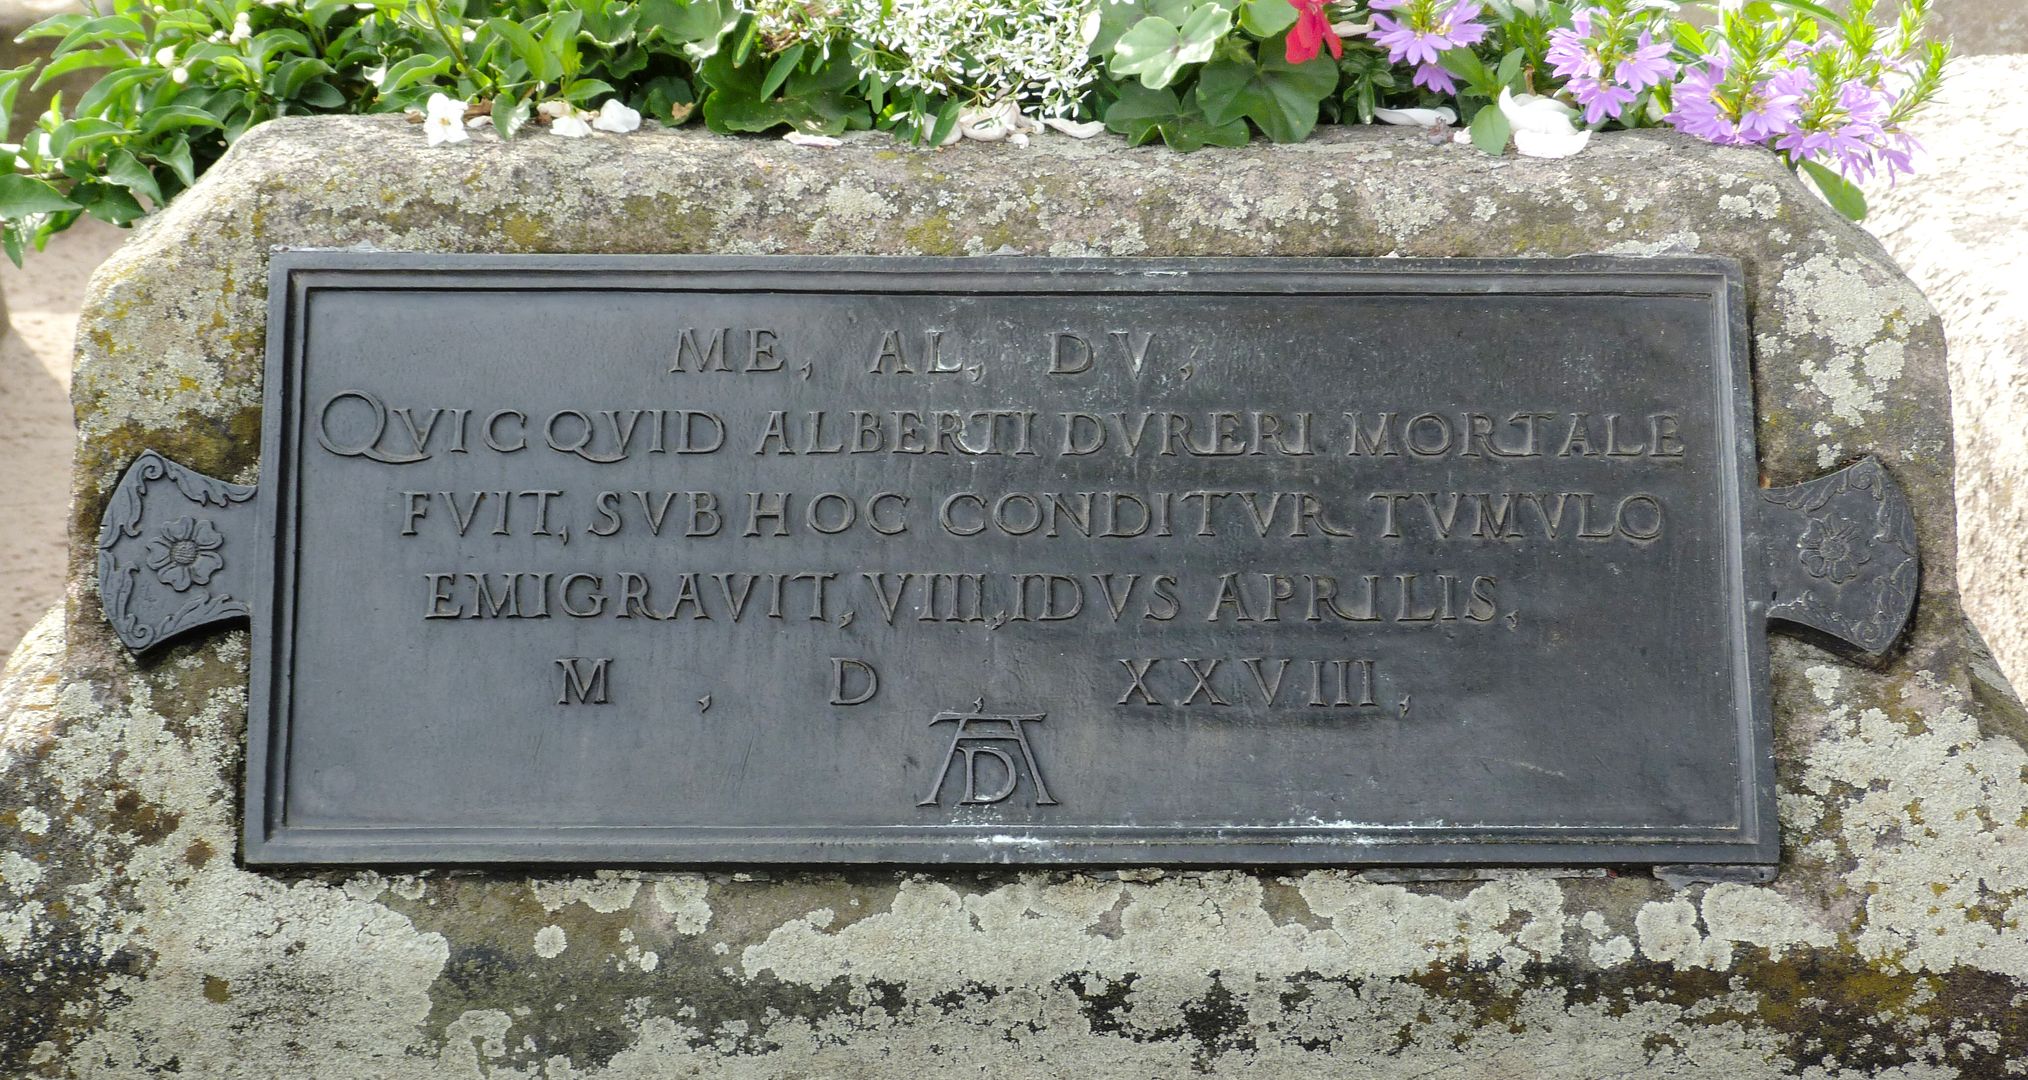 Albrecht Dürer's gravesite Grave inscription of Willibald Pirckheimer (1528)